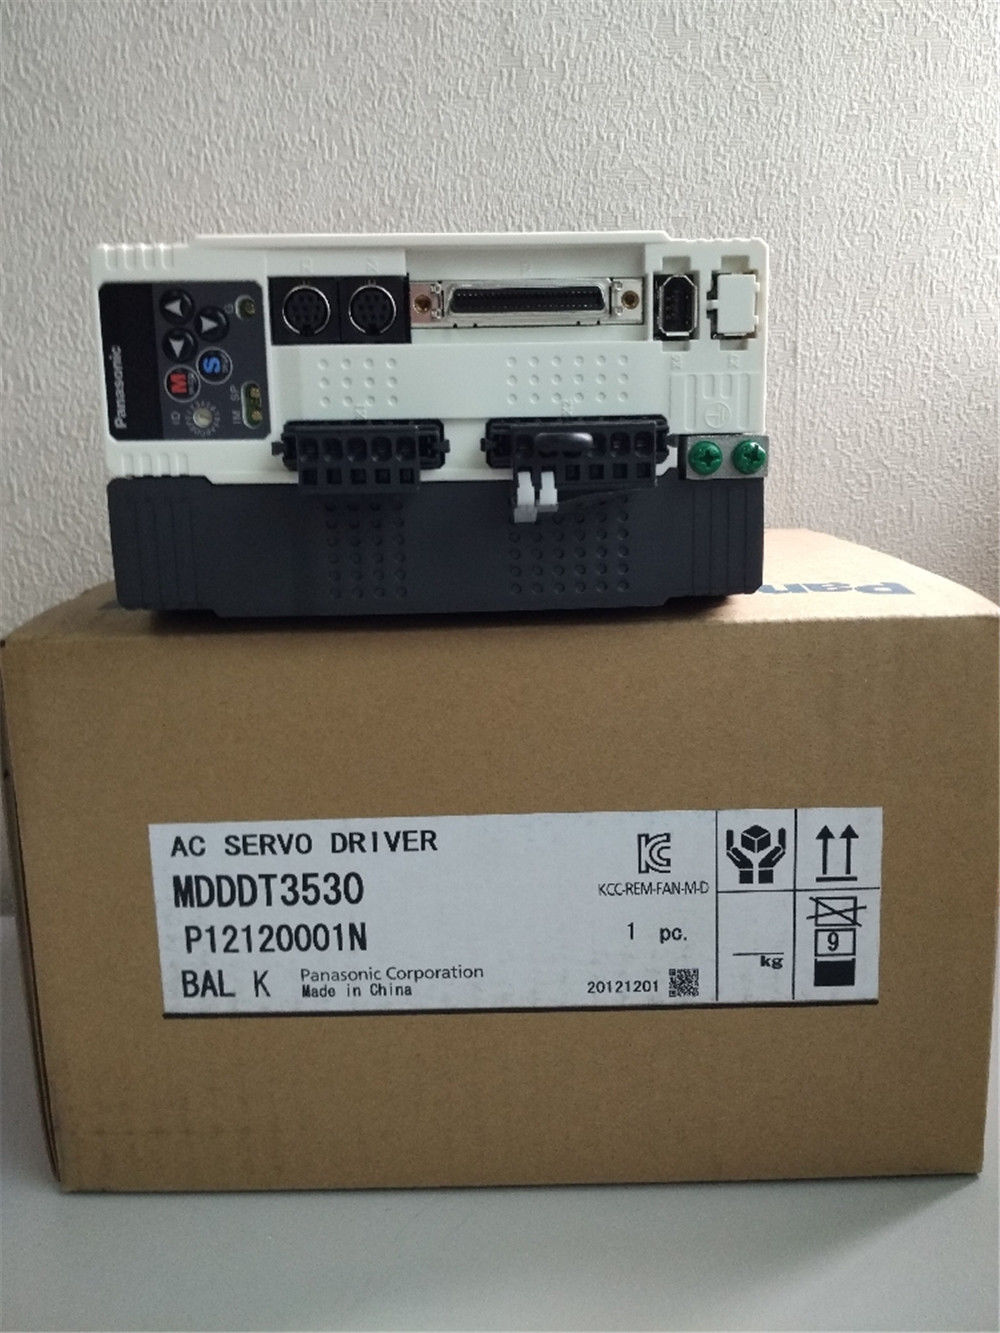 Brand New PANASONIC AC Servo drive MDDDT3530 in box